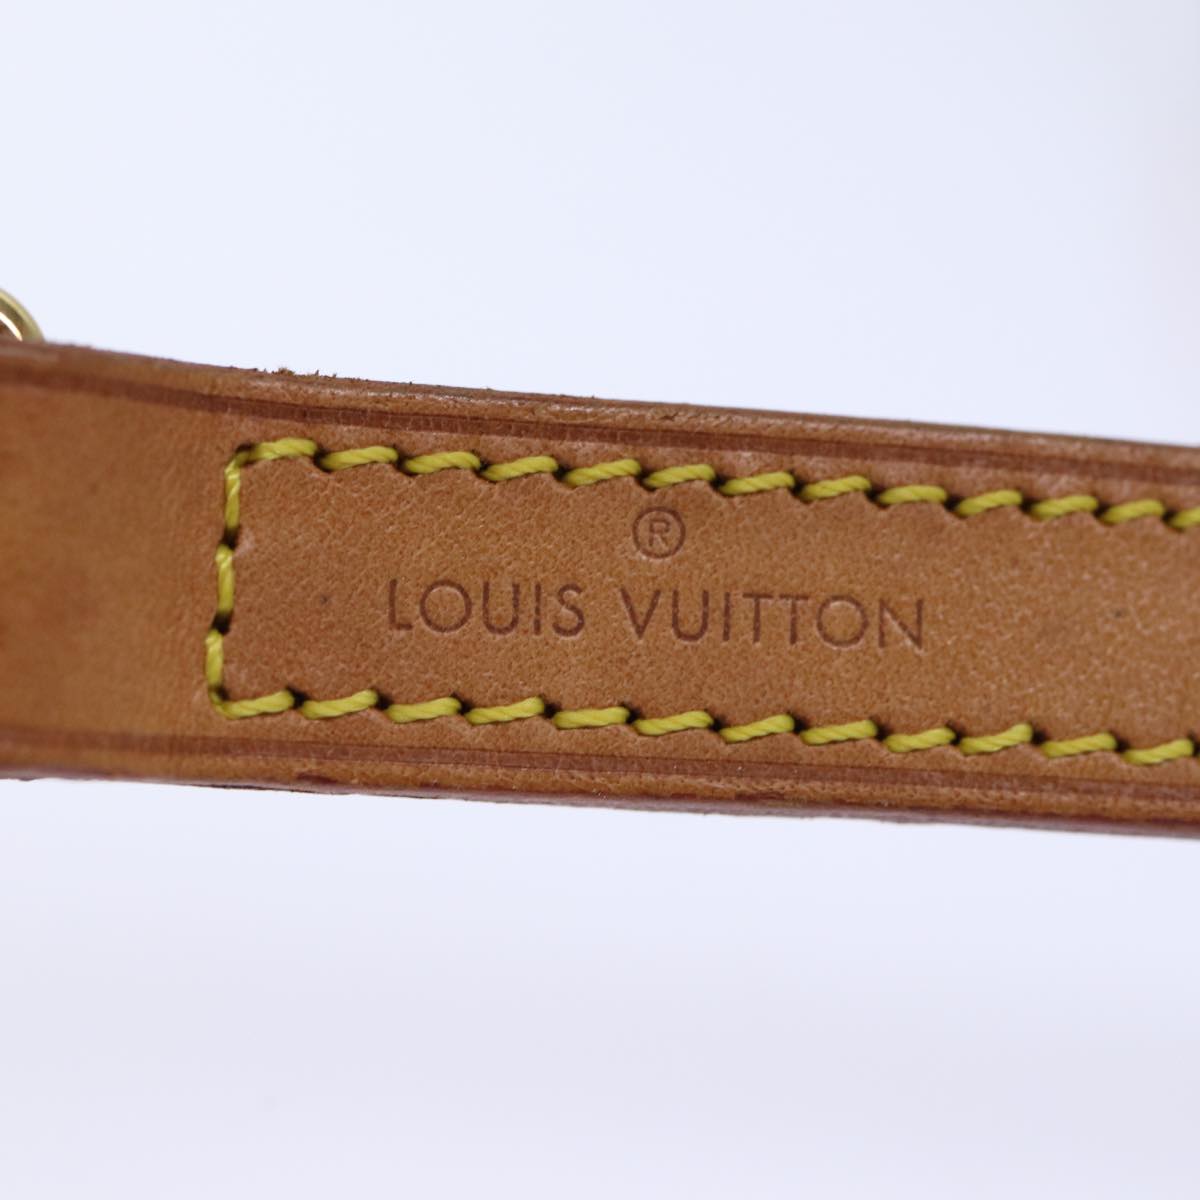 LOUIS VUITTON Shoulder Strap Leather 36.2"" Beige LV Auth 73274